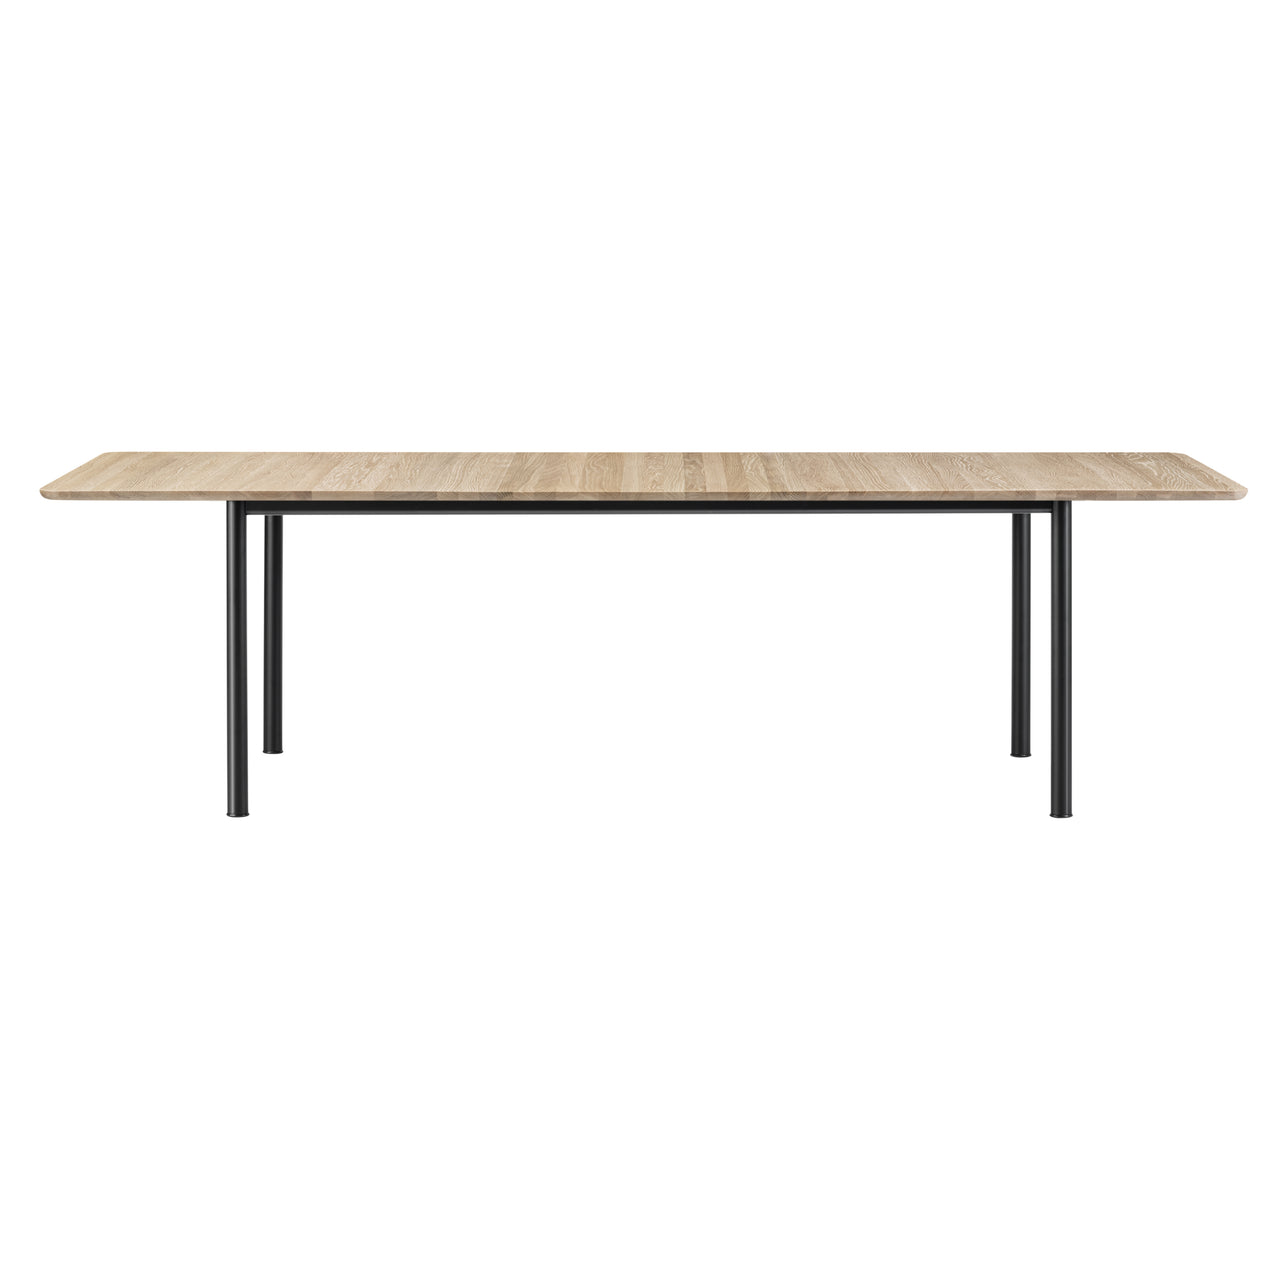 Plan Extendable Table: Light Oiled Oak + Black